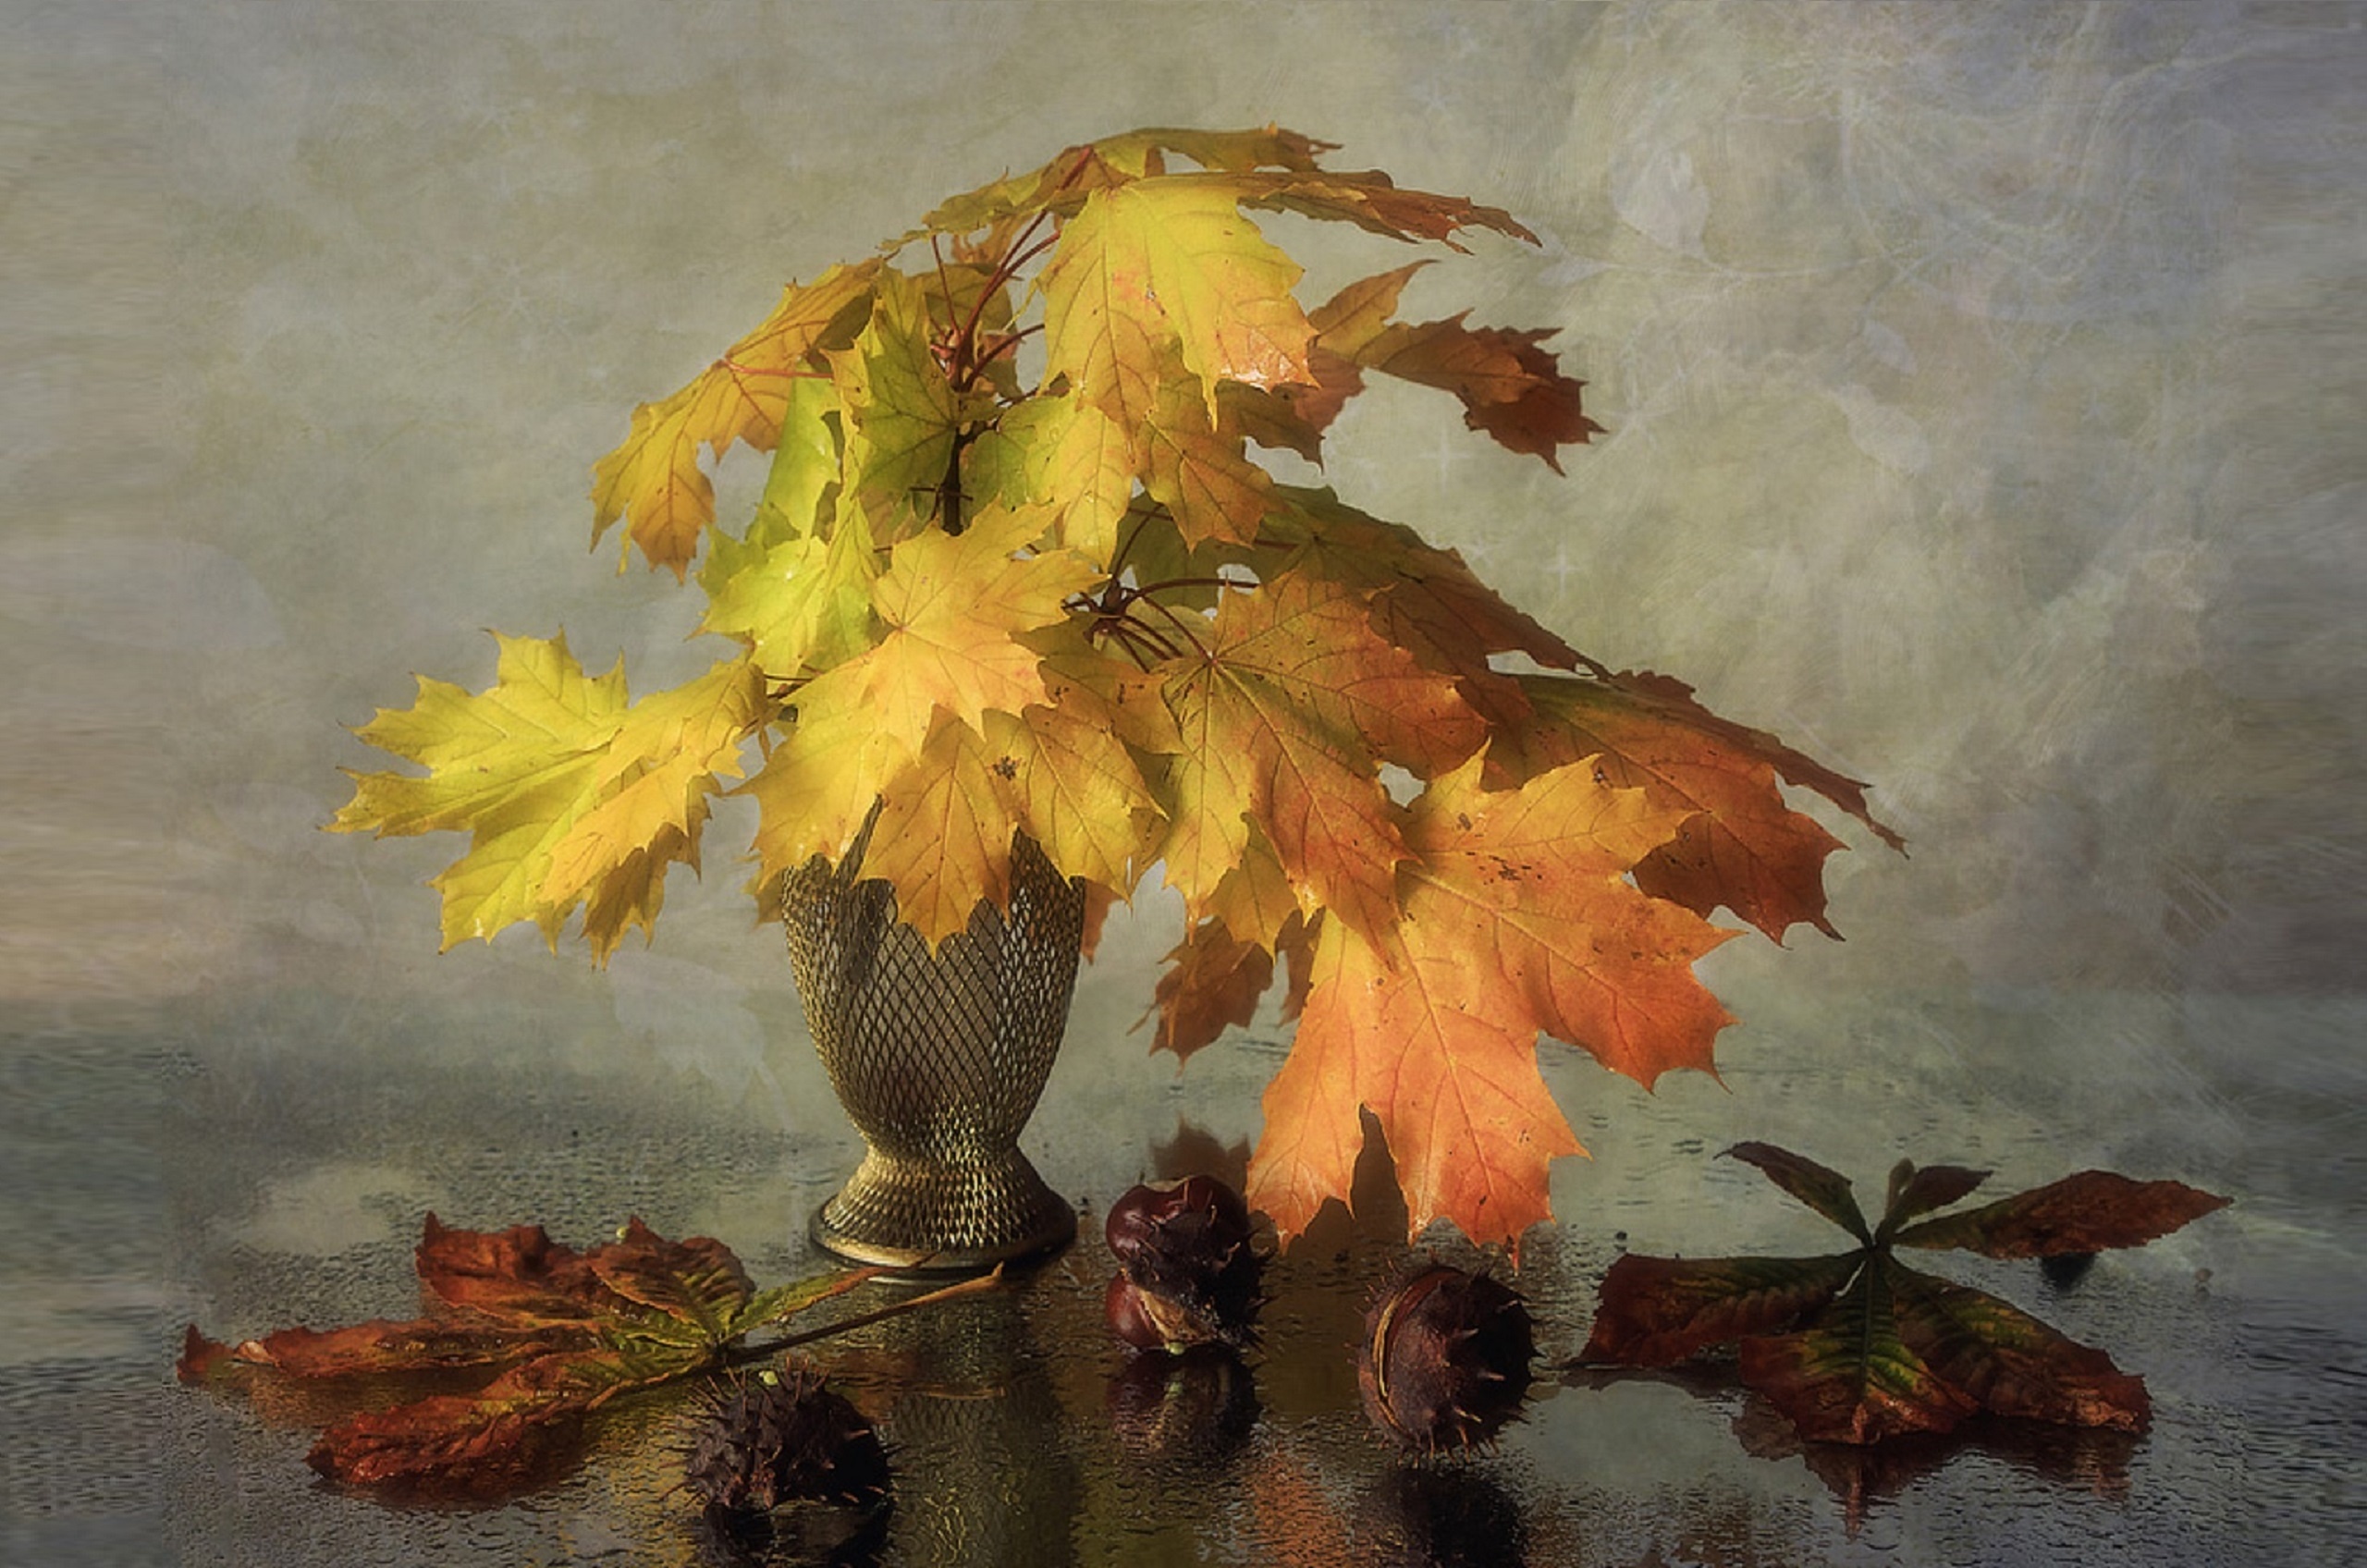 Обои на монитор | Красивые | Осенний свет, натюрморт, осенние листья,  каштаны, мокрое стекло